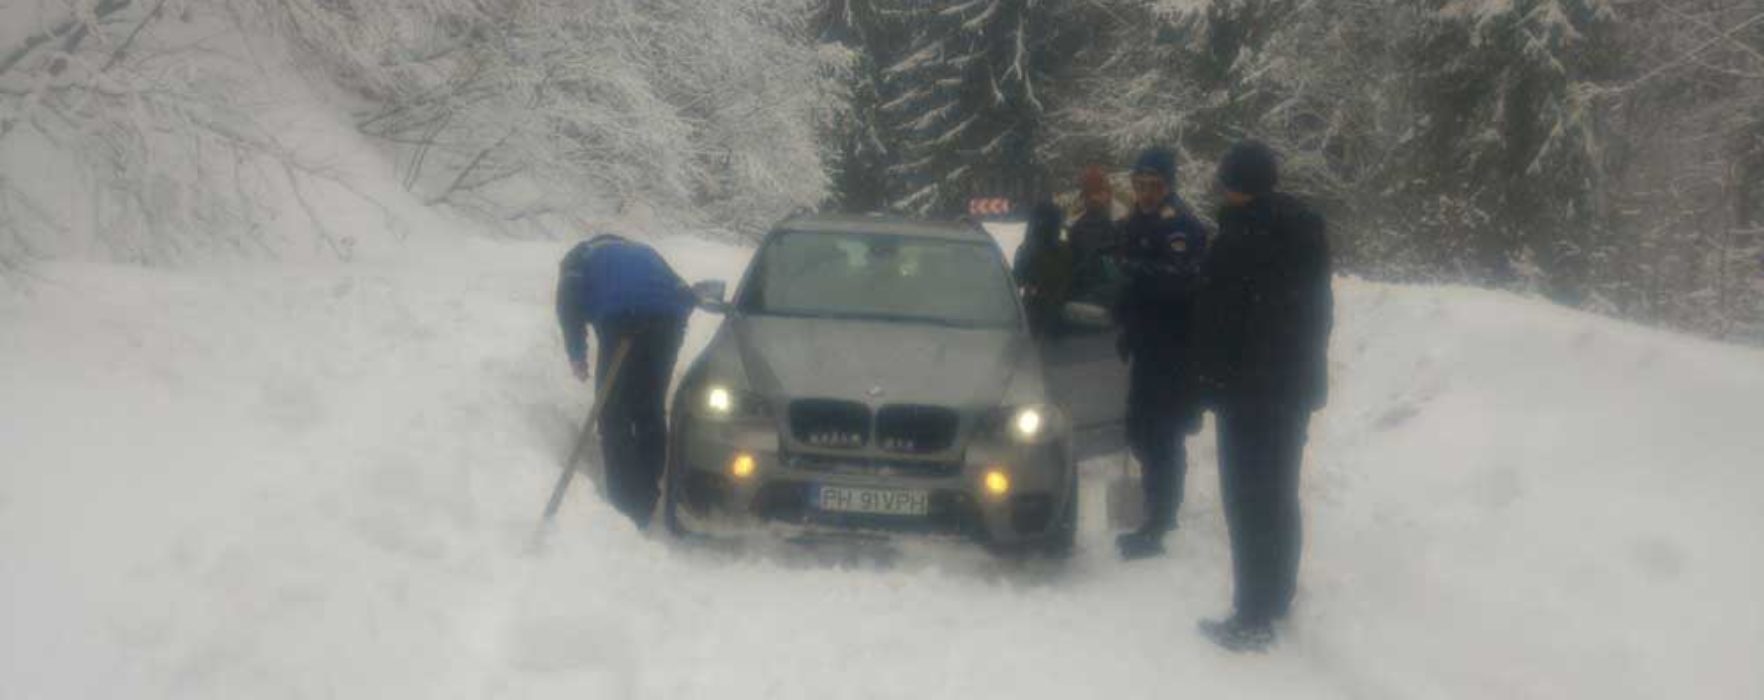 Dâmboviţa: Turişti rămaşi înzăpeziţi cu maşina în zona Padina-Peştera, ajutaţi de jandarmii montani